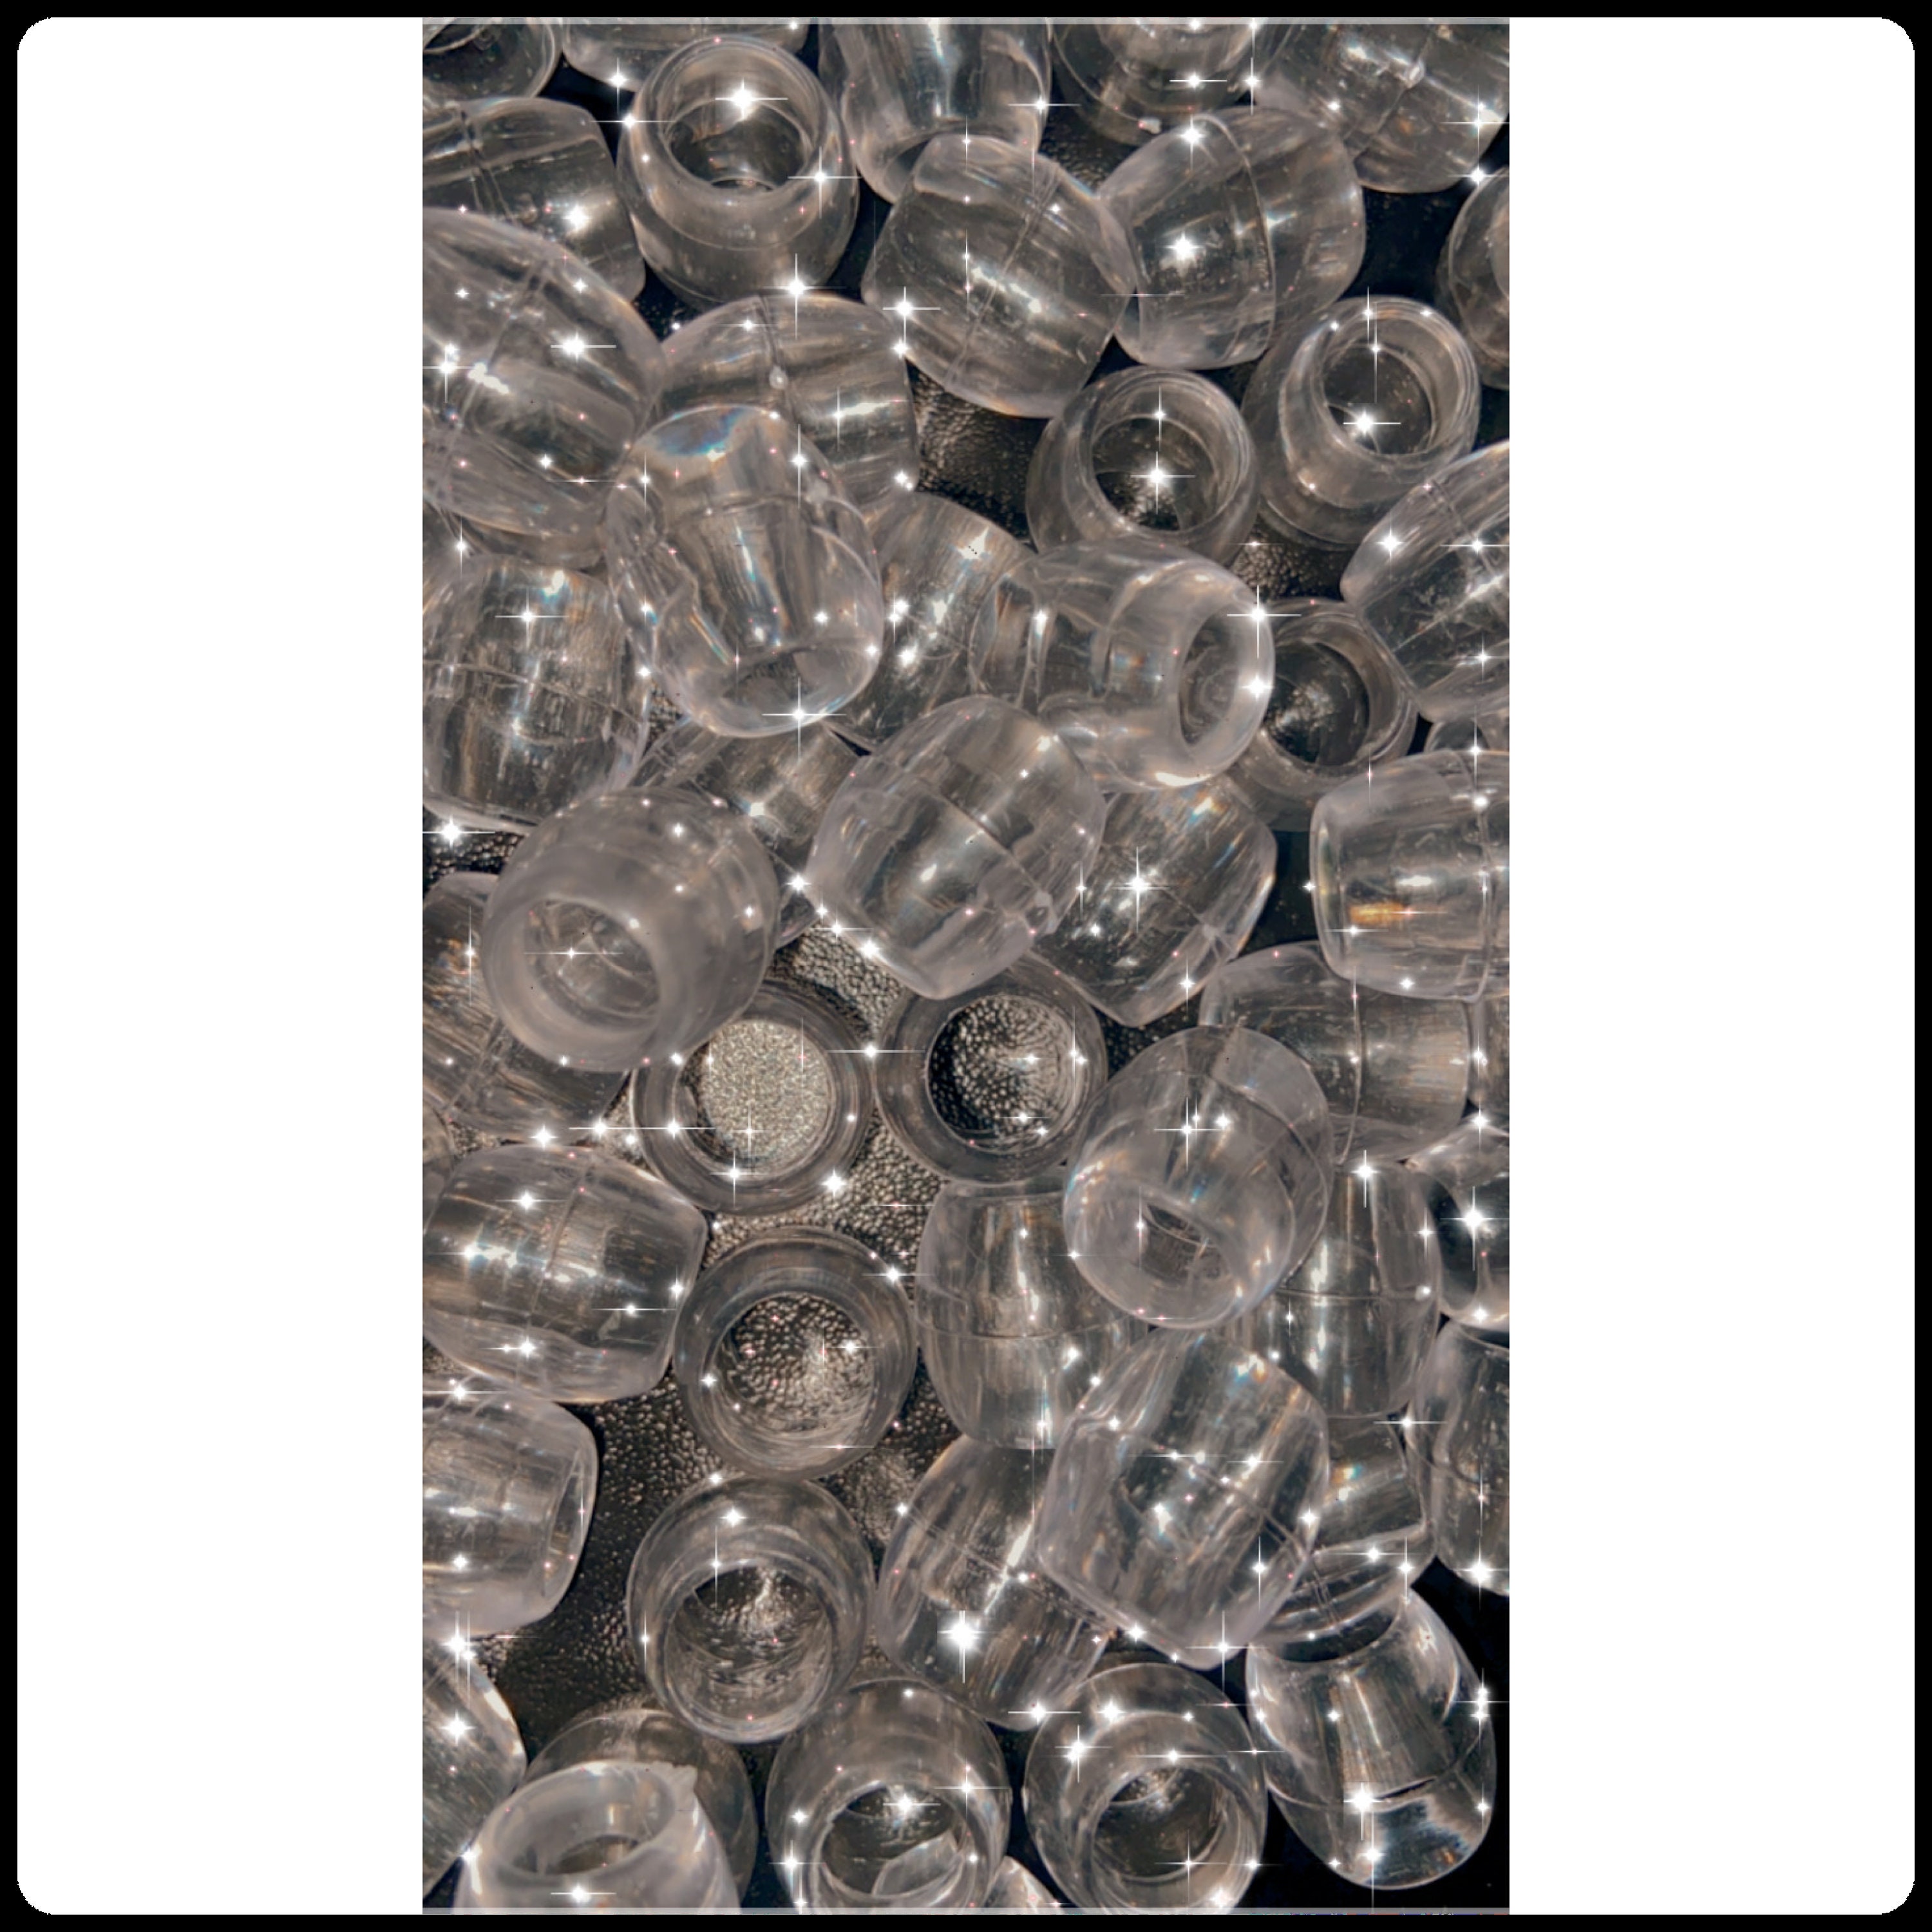 Hair Beads Clear 300pc - Dreamfix